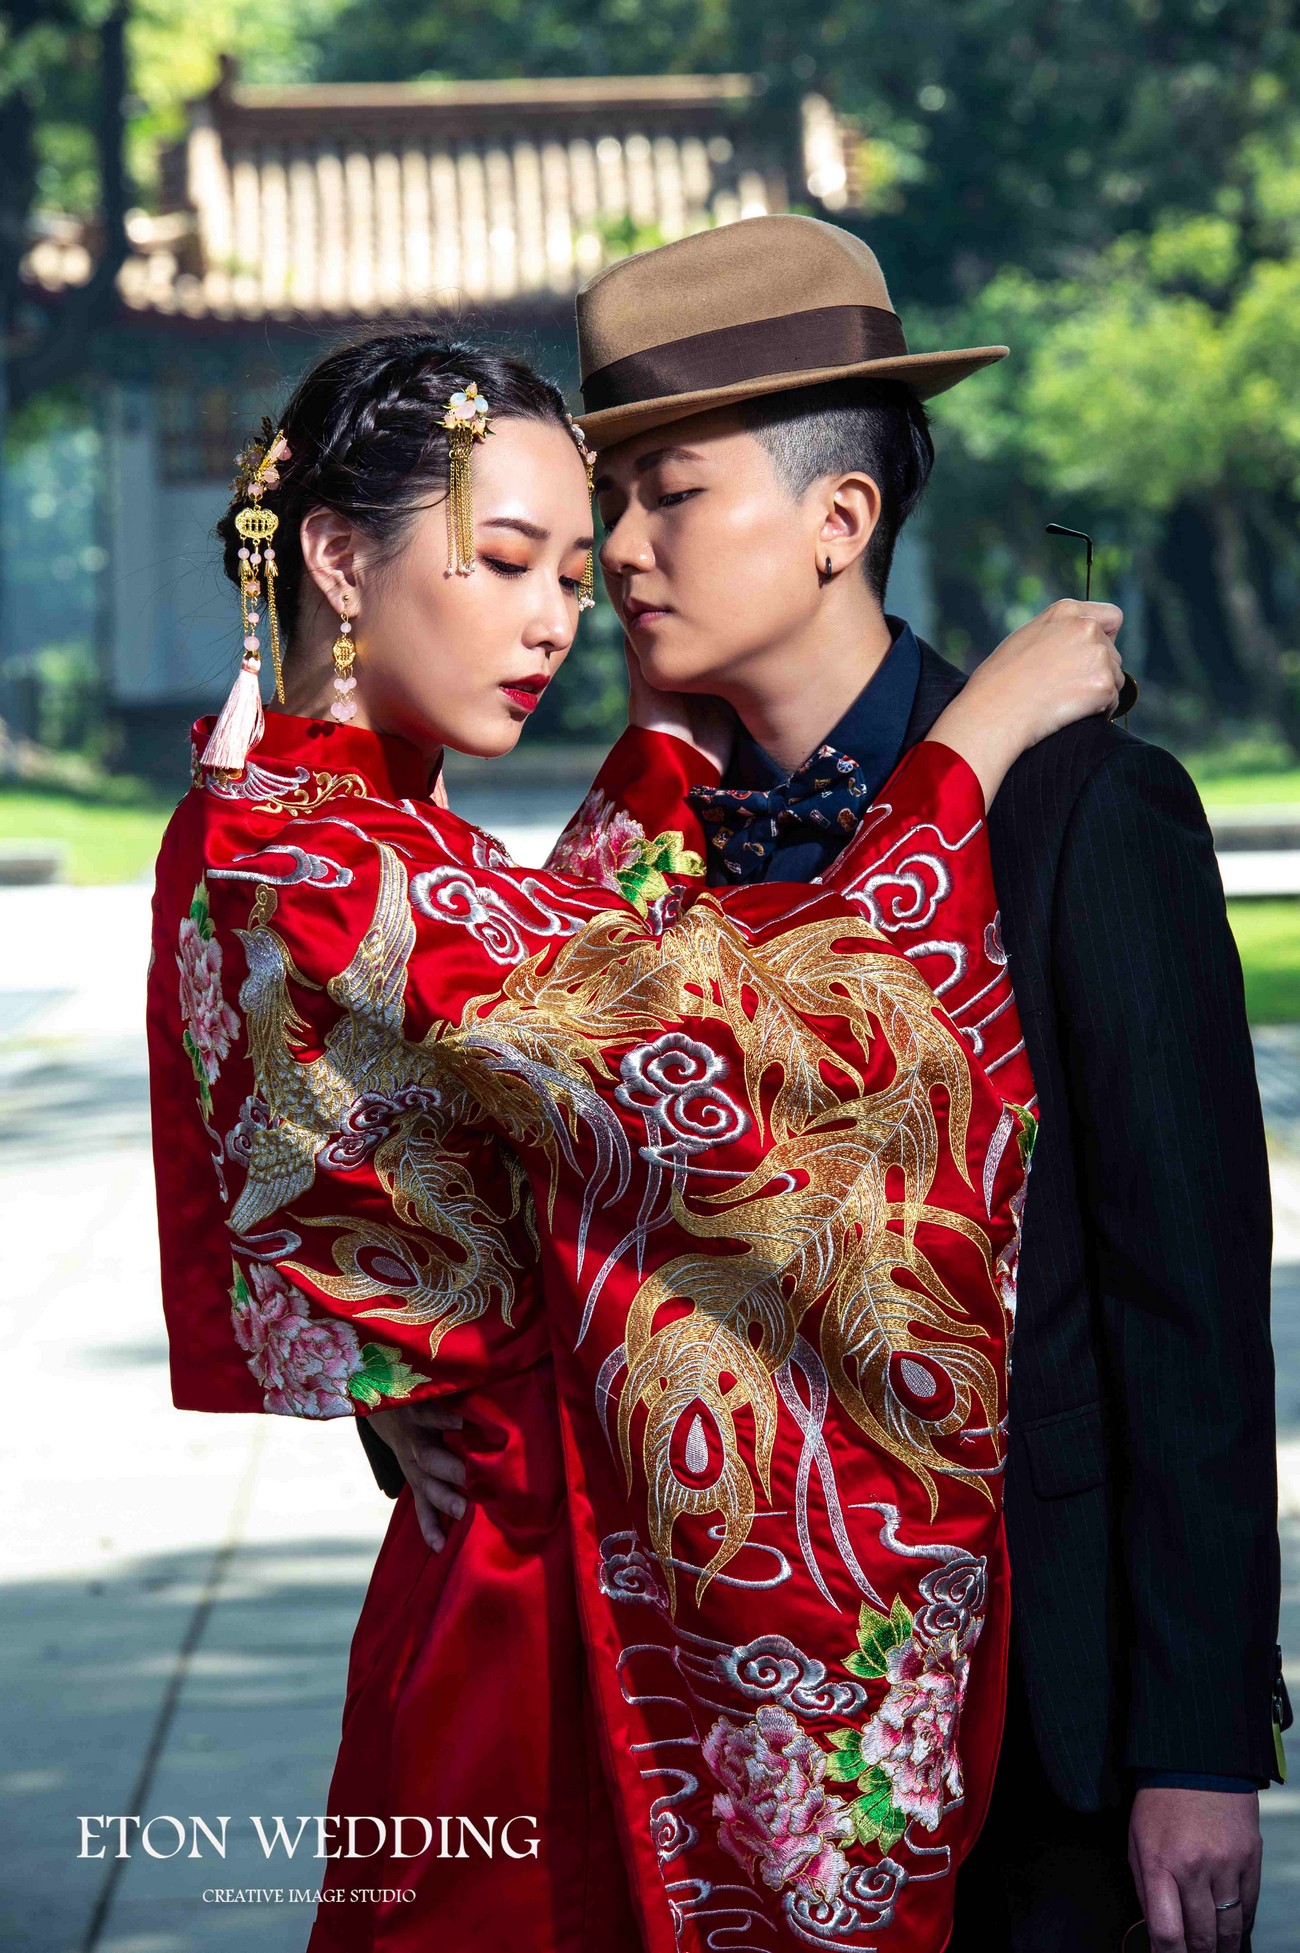 中式禮服,中式婚紗照,秀禾服,龍鳳褂,旗袍,中式婚紗